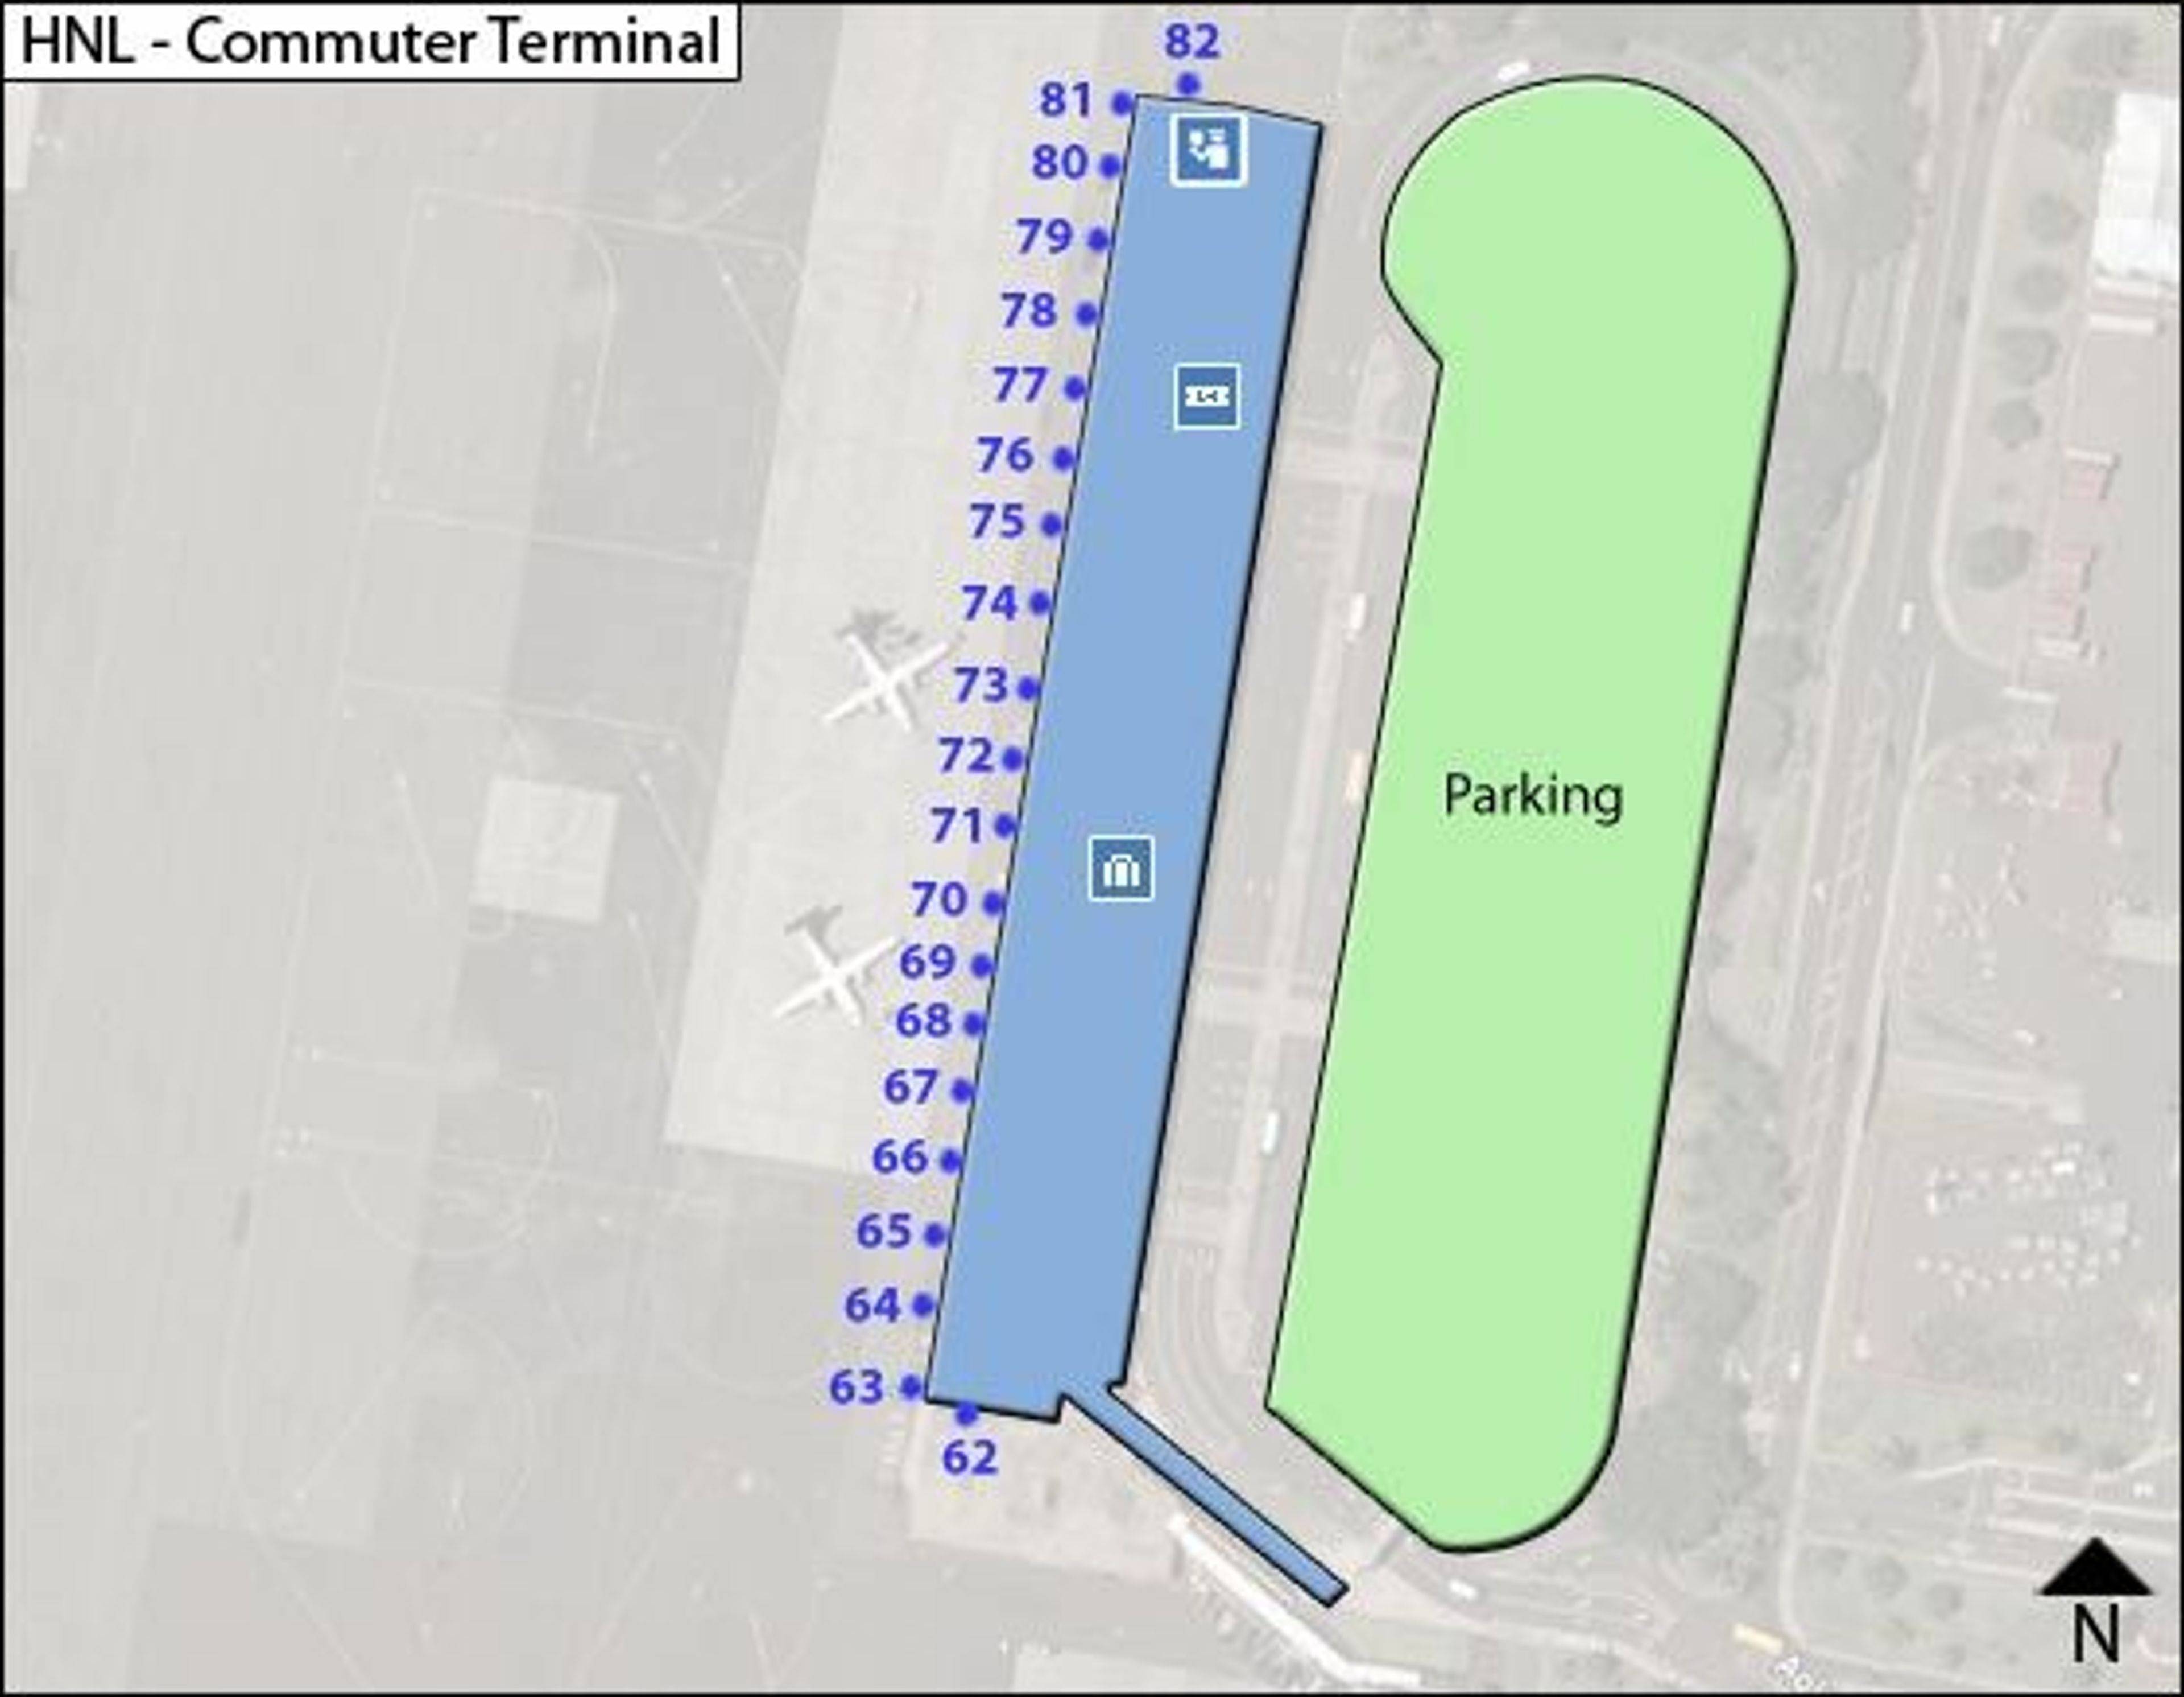 HNL Commuter Terminal Map